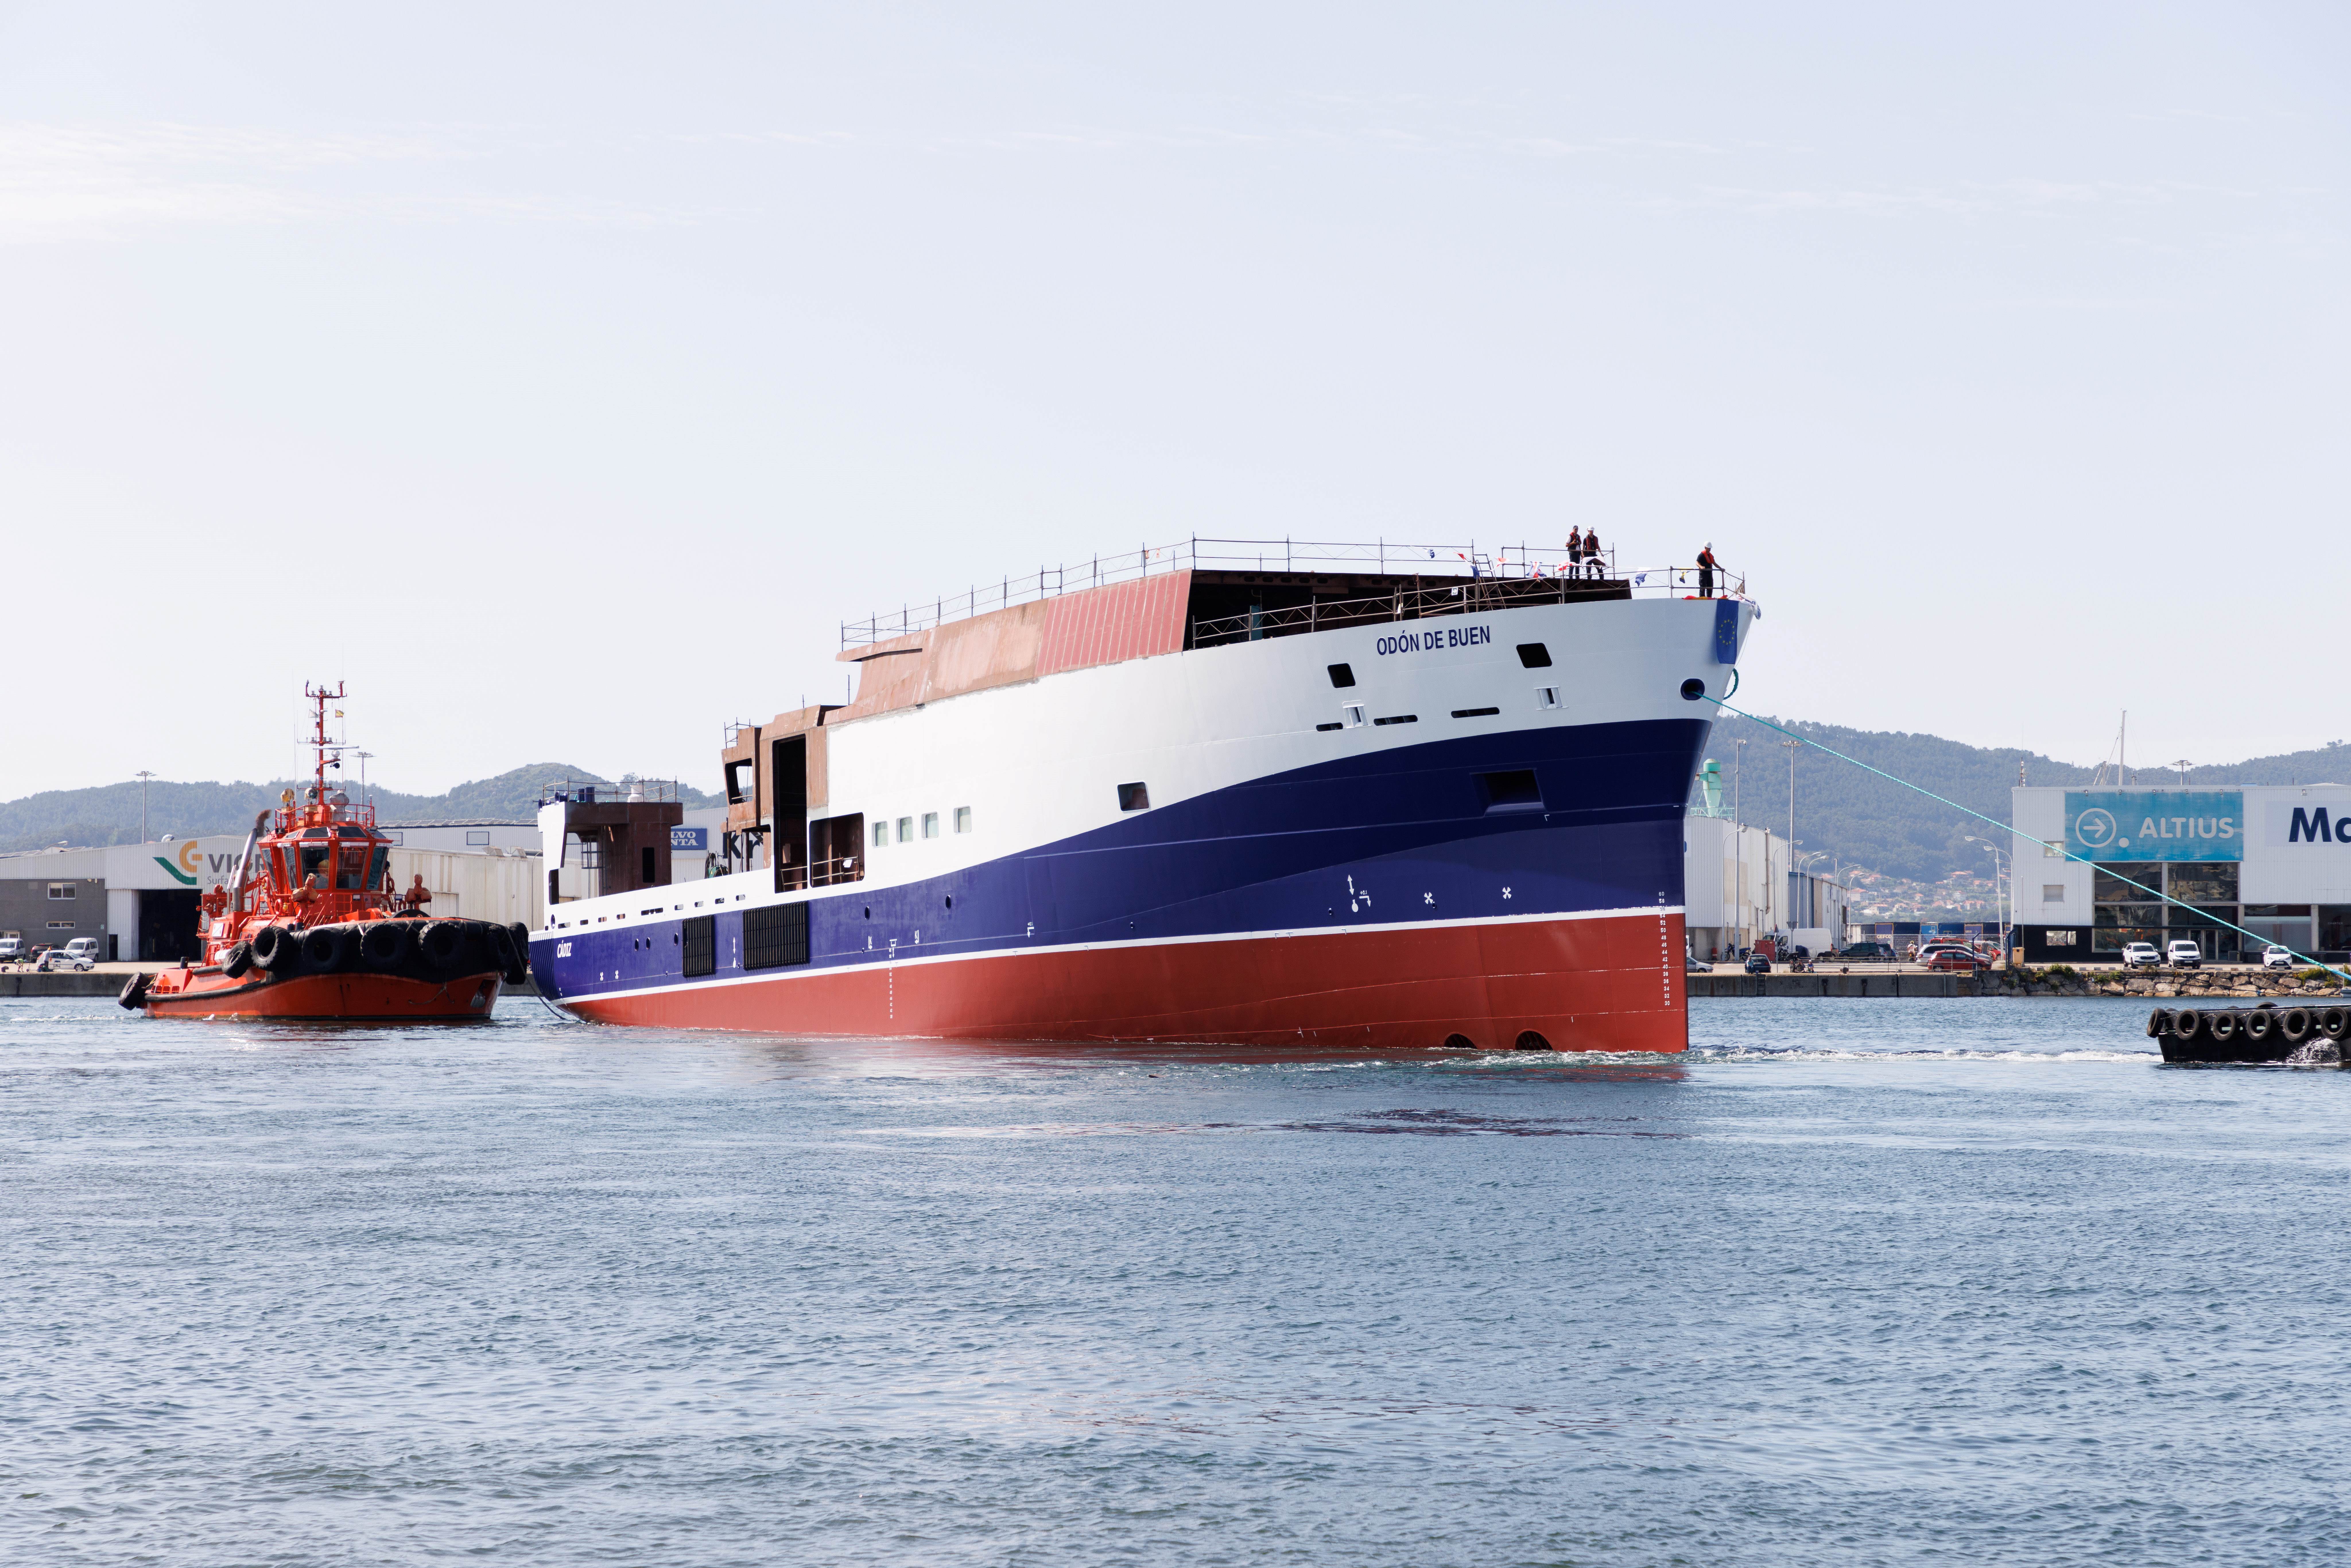 Ayer tuvo lugar en Vigo la botadura del buque oceanográfico Odón de Buen